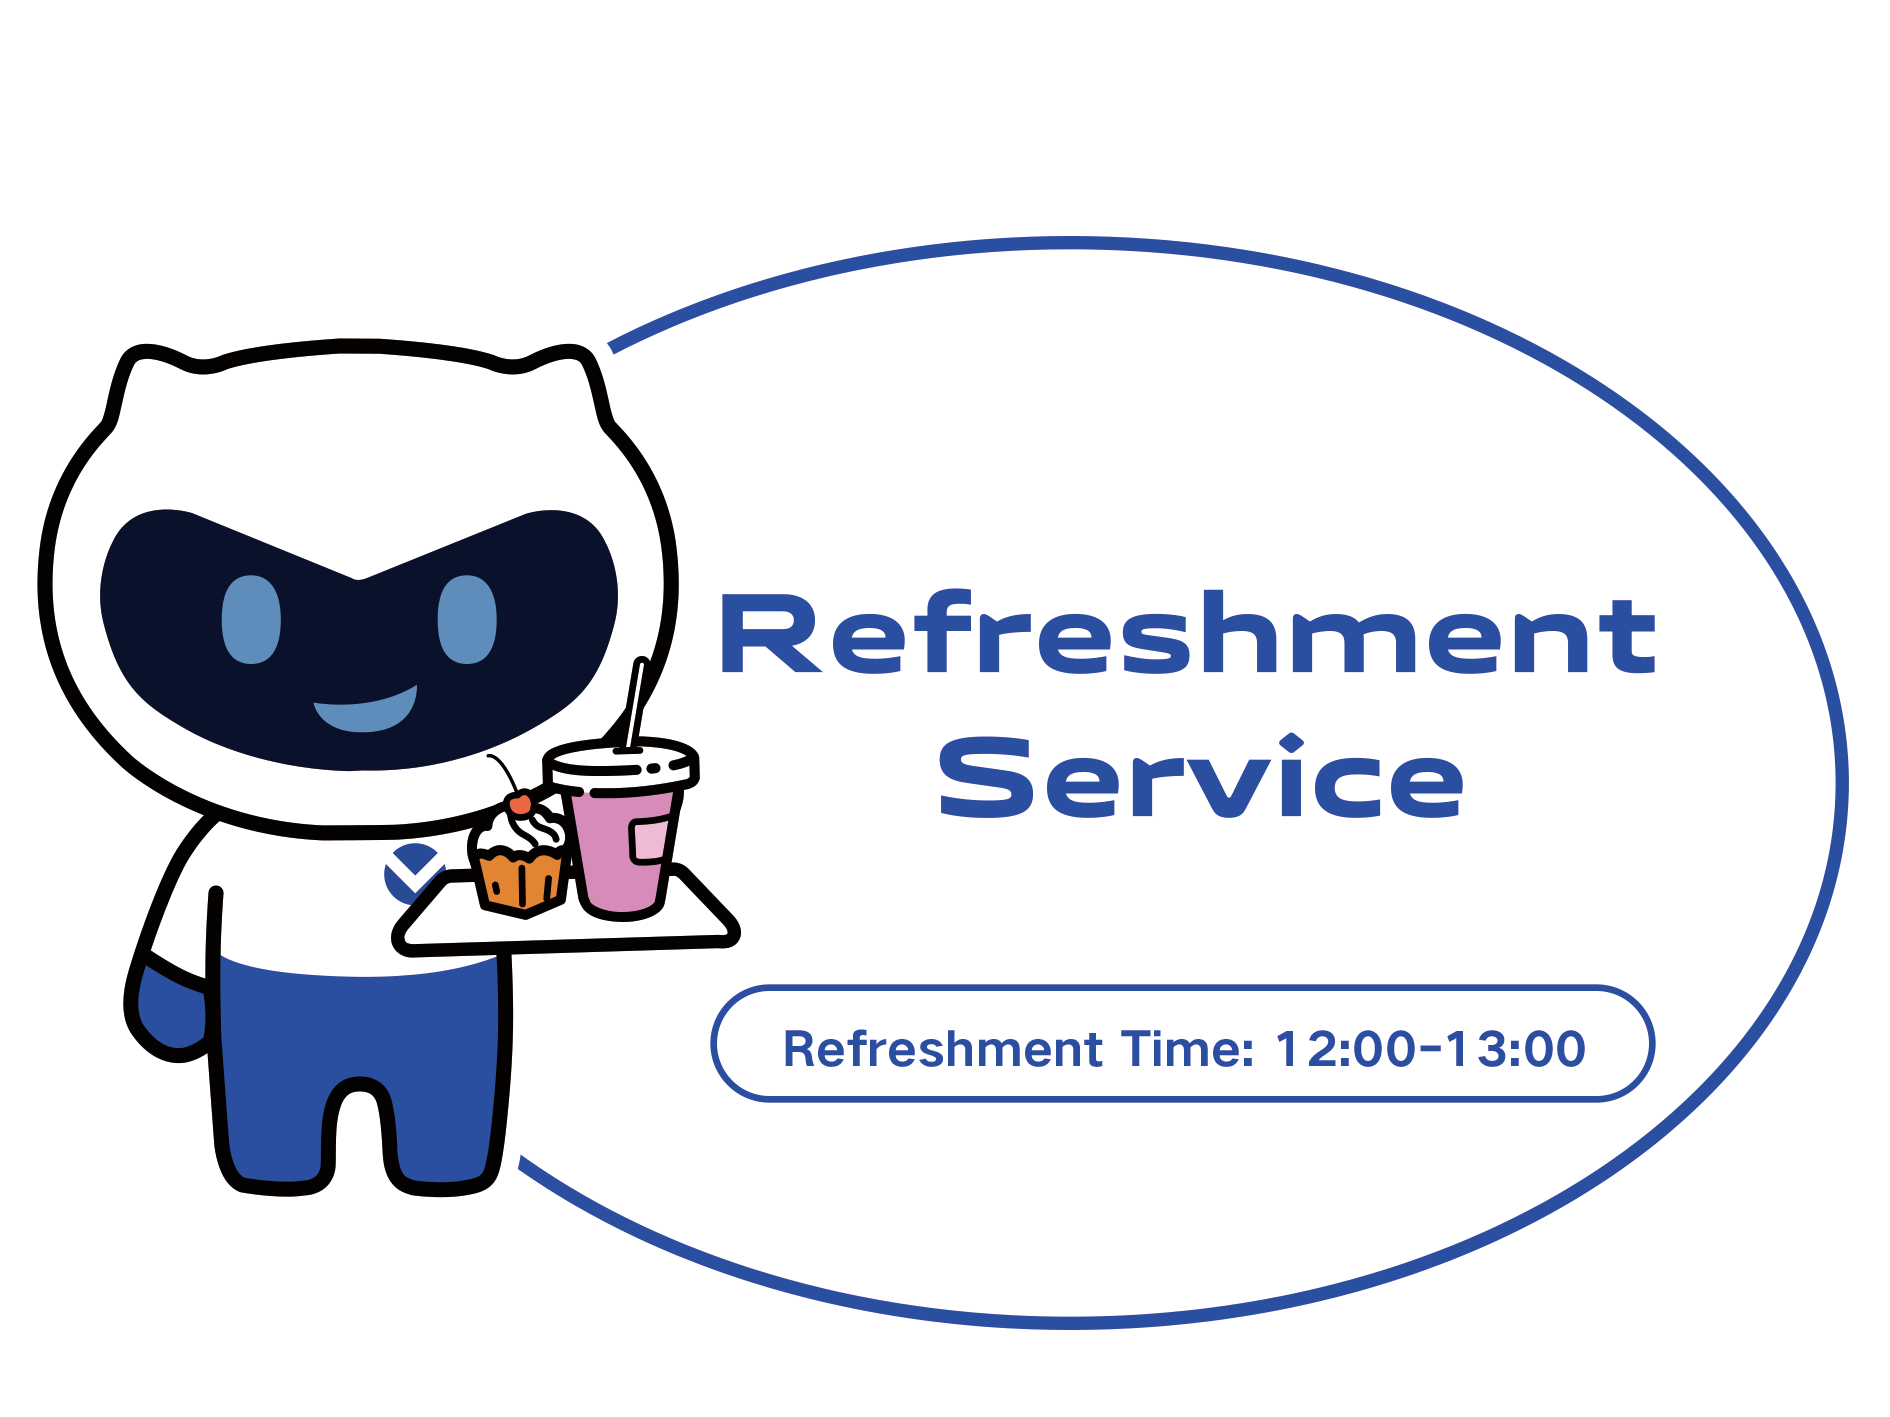 Refreshment Service